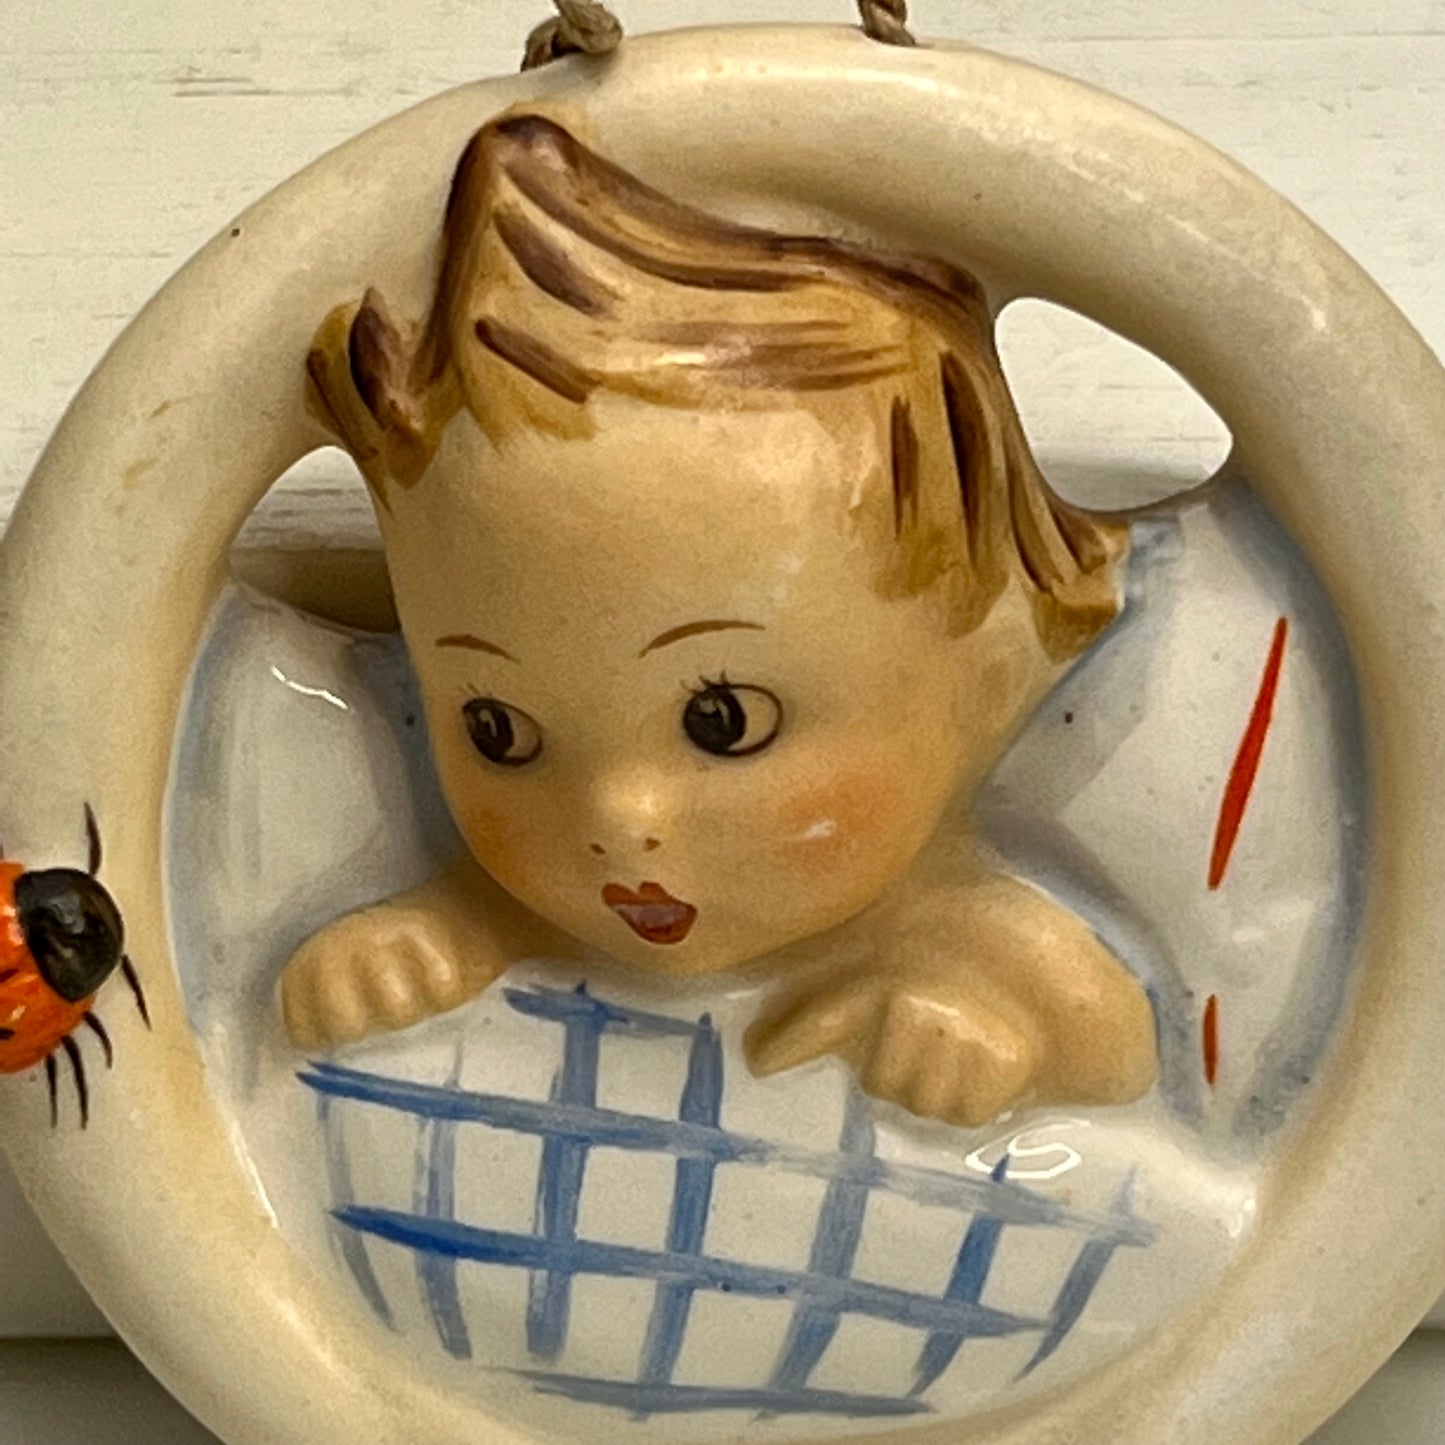 Hummel "Child in Bed Bed Baby Lady Bug" HUM 137  M. I. Hummel